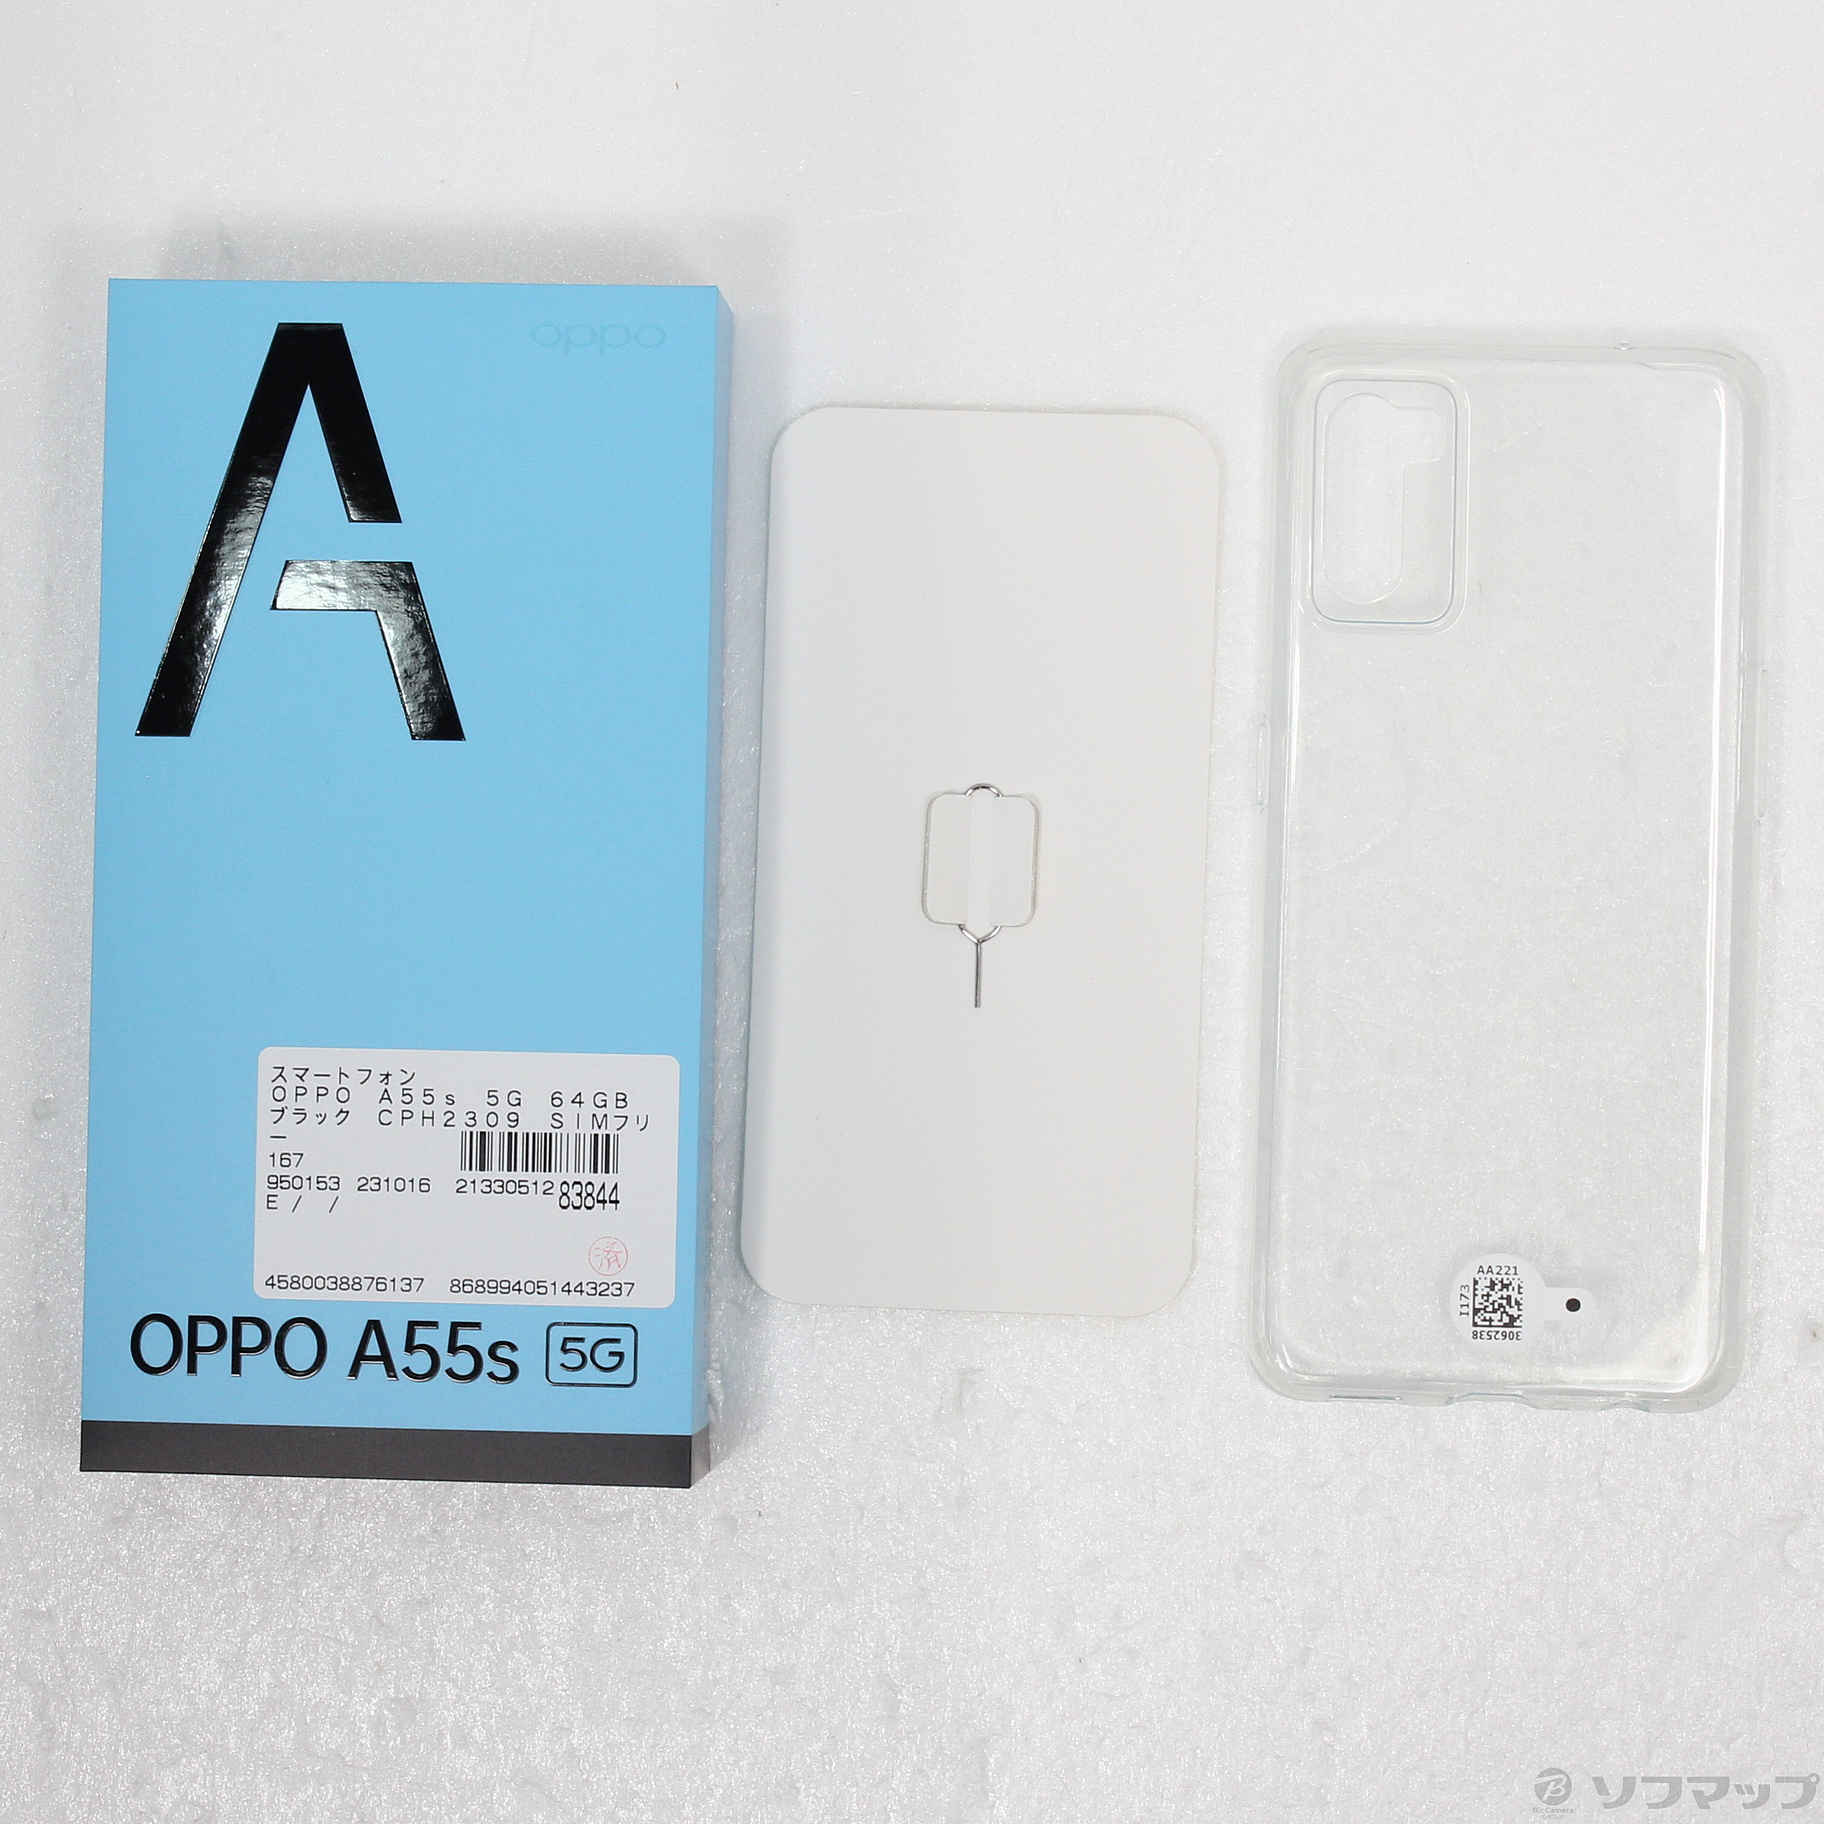 中古】OPPO A55s 5G 64GB ブラック CPH2309 SIMフリー